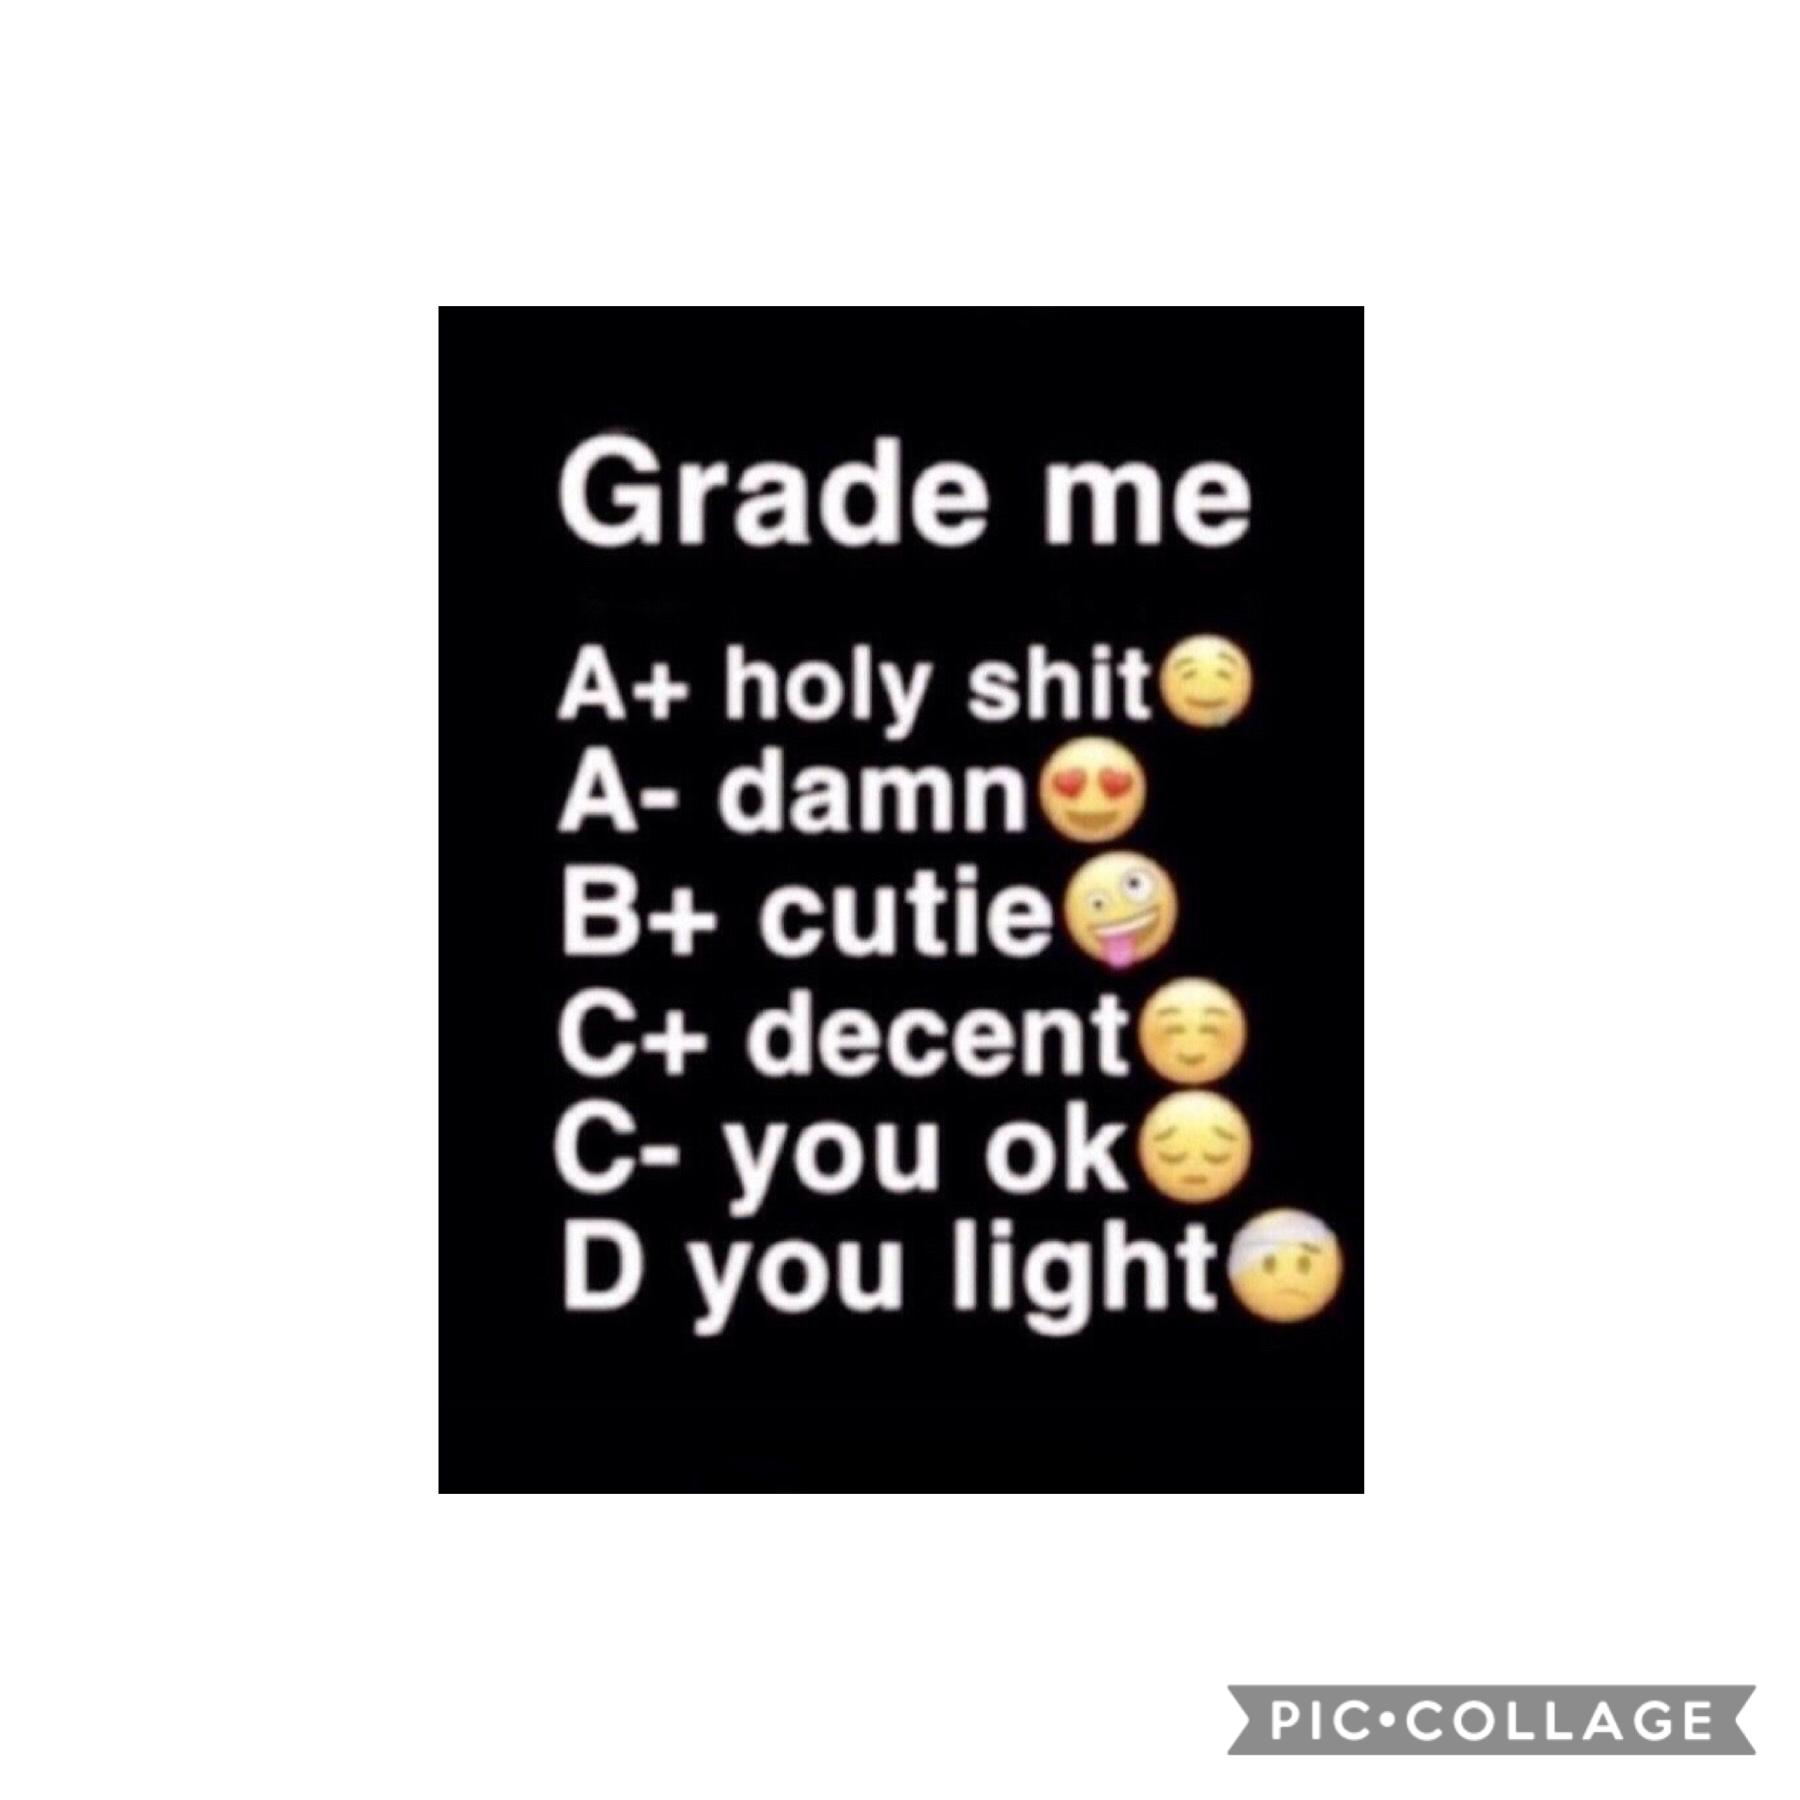 What do you grade me?